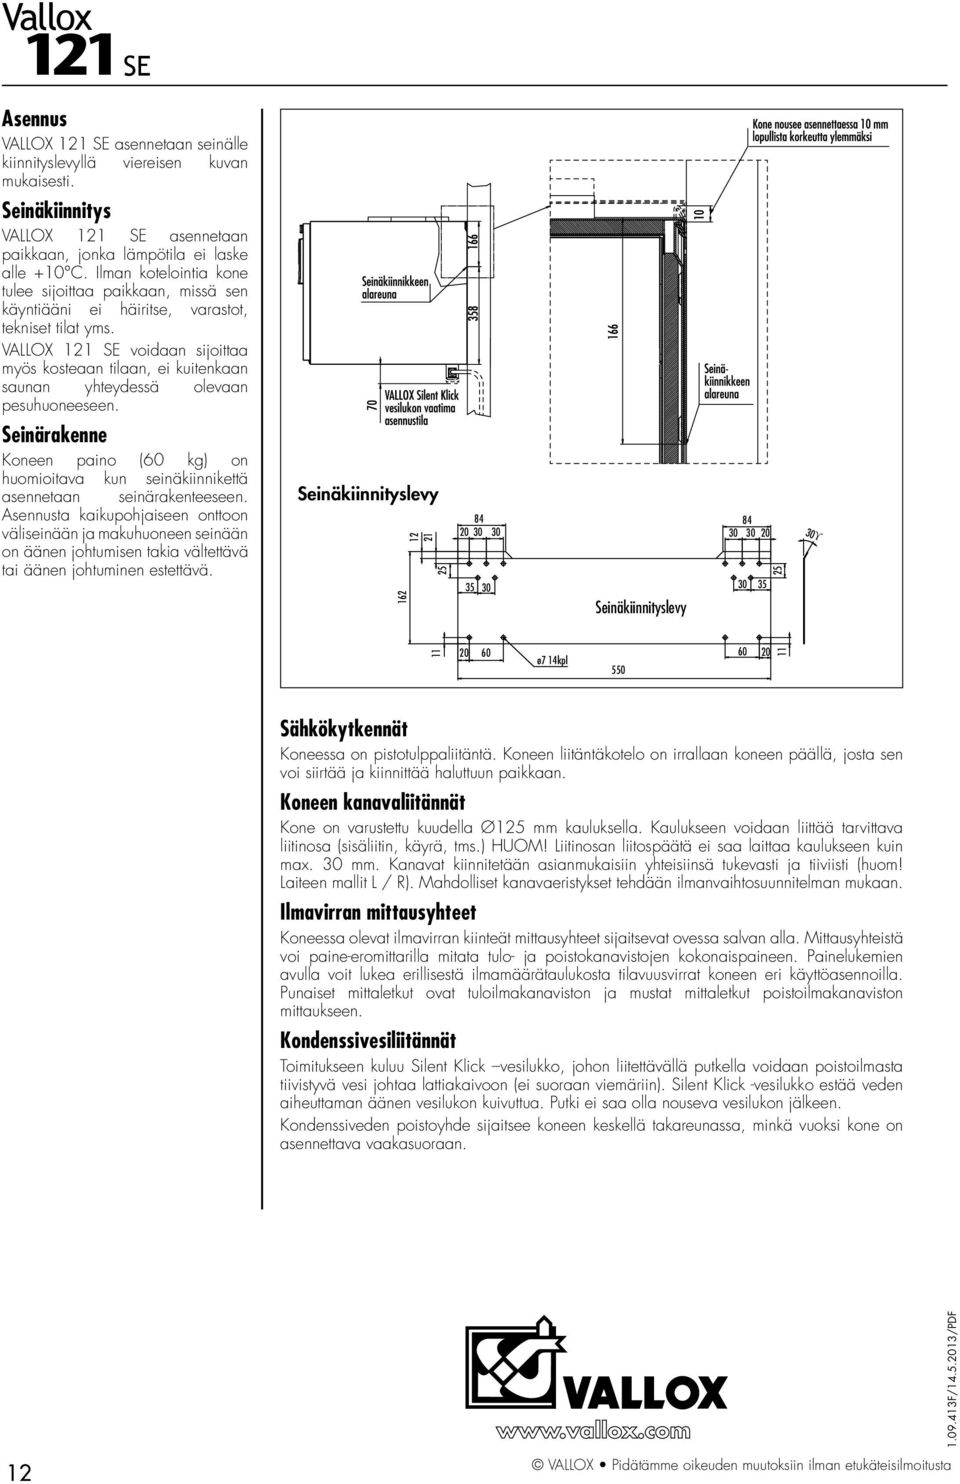 VALLOX 121 SE voidaan sijoittaa myös kosteaan tilaan, ei kuitenkaan saunan yhteydessä olevaan pesuhuoneeseen.